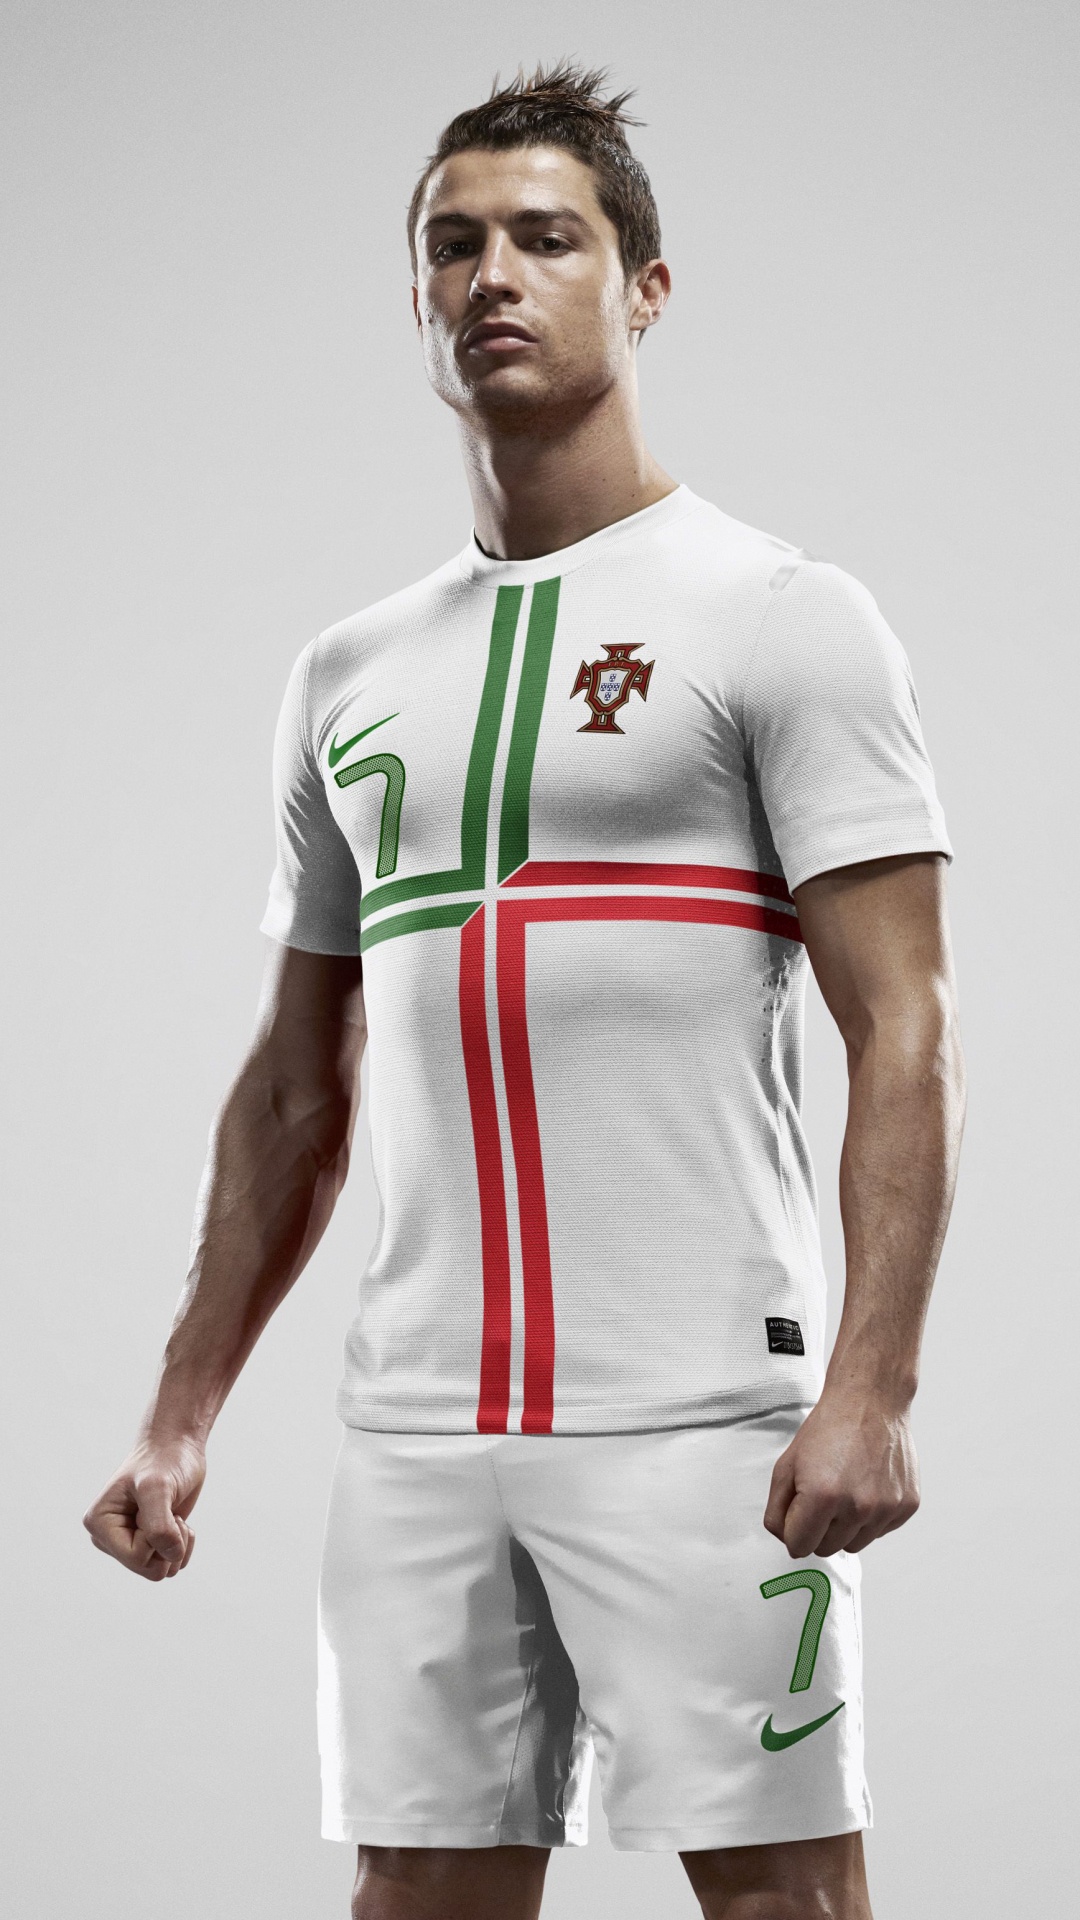 克里斯蒂亚诺*罗纳尔多, 足球运动员, 白色, 泽西, 运动服 壁纸 1080x1920 允许